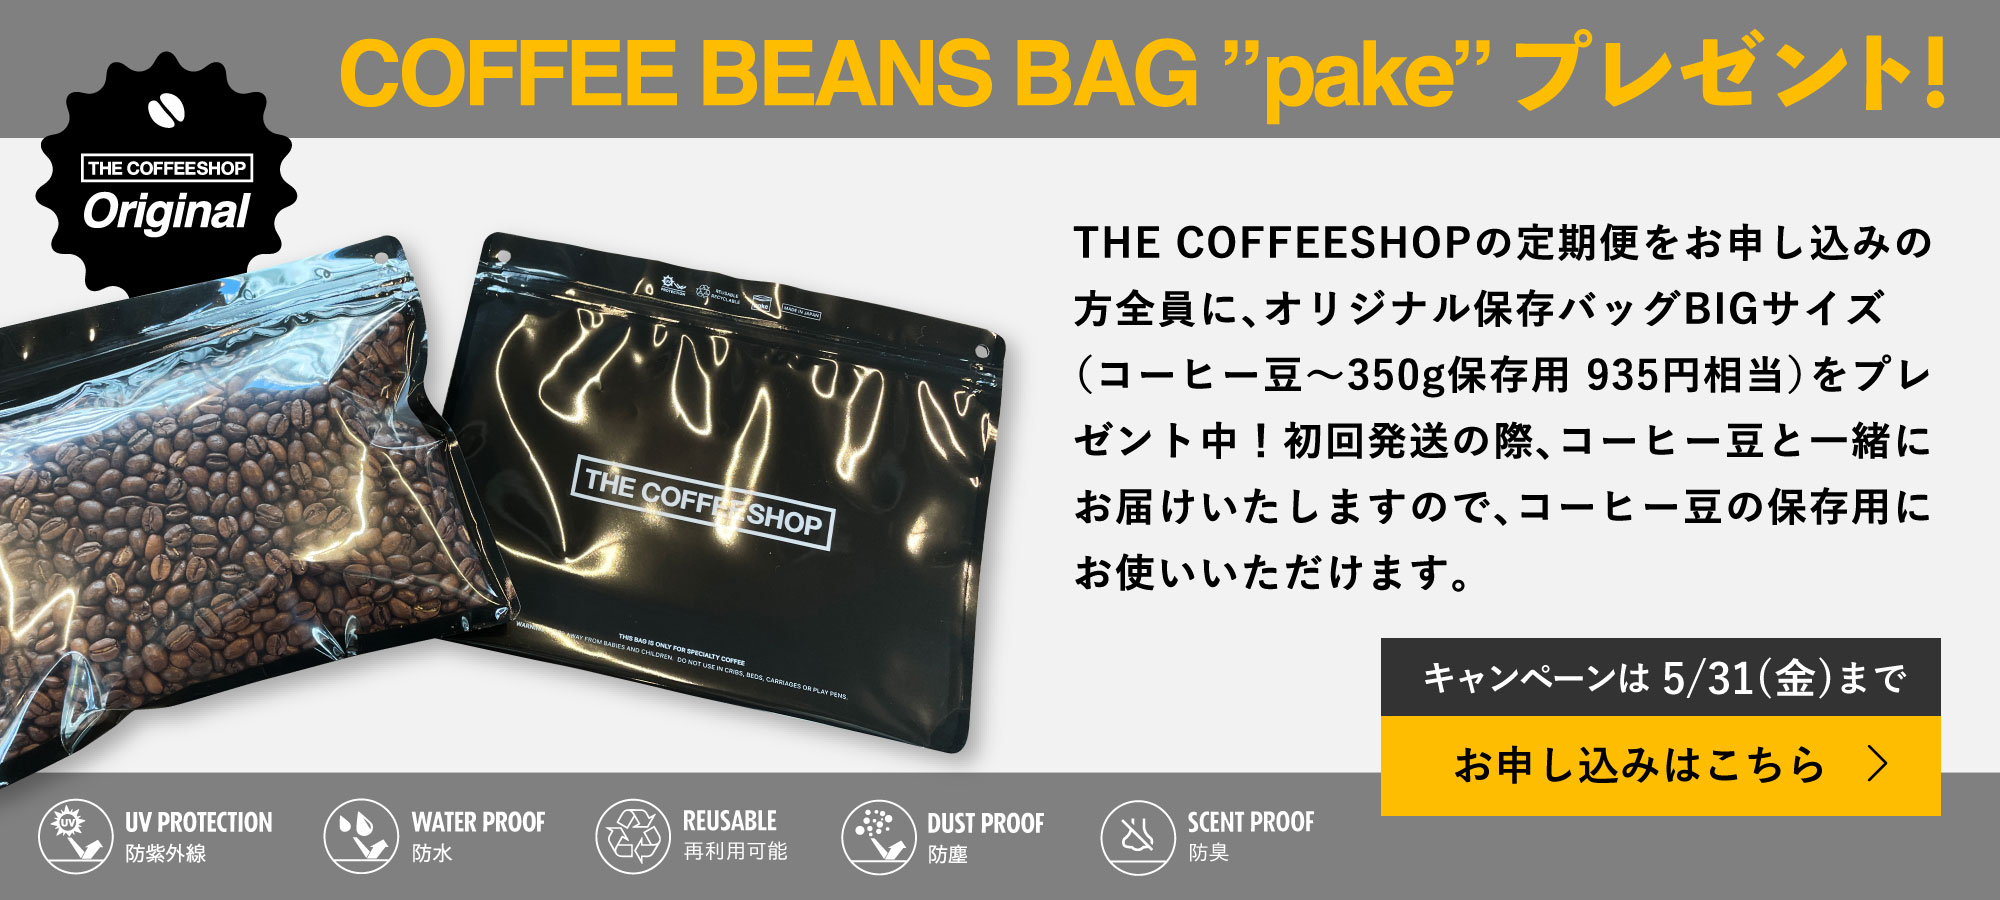 スペシャルティコーヒーサブスク〈BEANS DELIVERY SERVICE〉コーヒー豆保存袋プレゼントキャンペーン！5/31(金)まで〈送料無料〉